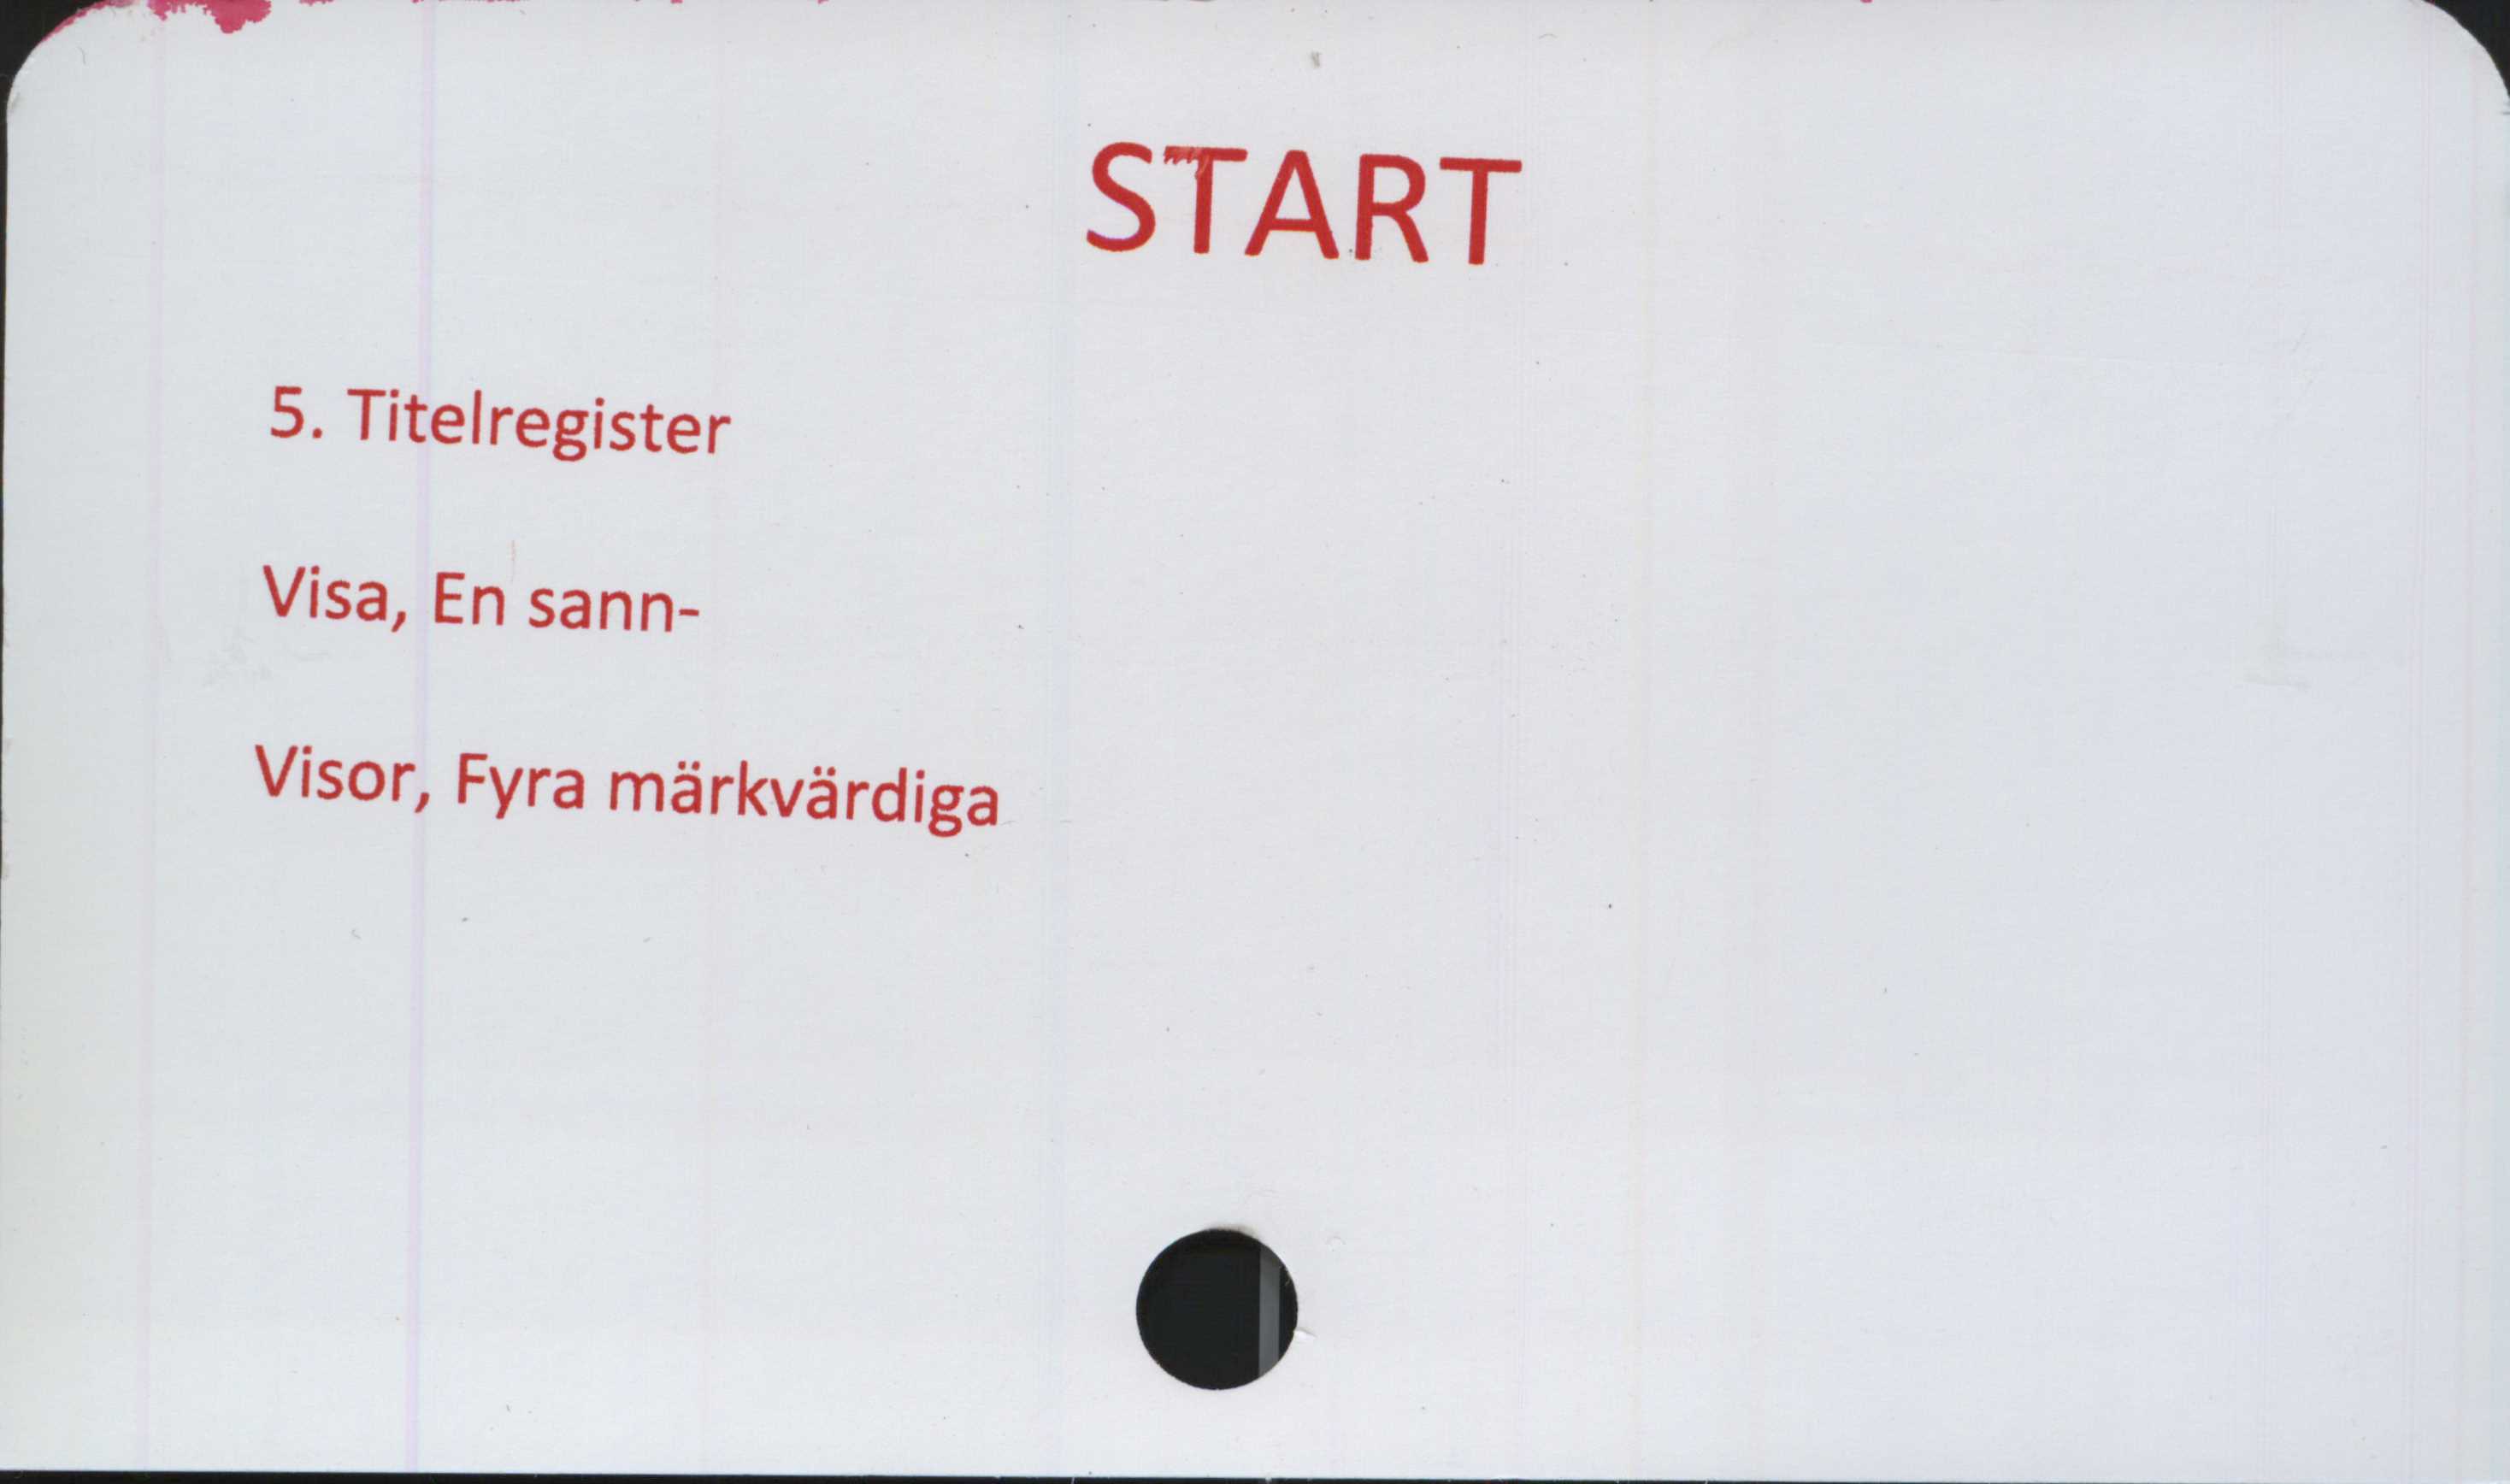  ﻿START

5. Titelregister
Visa, En sann-
Visor, Fyra märkvärdiga